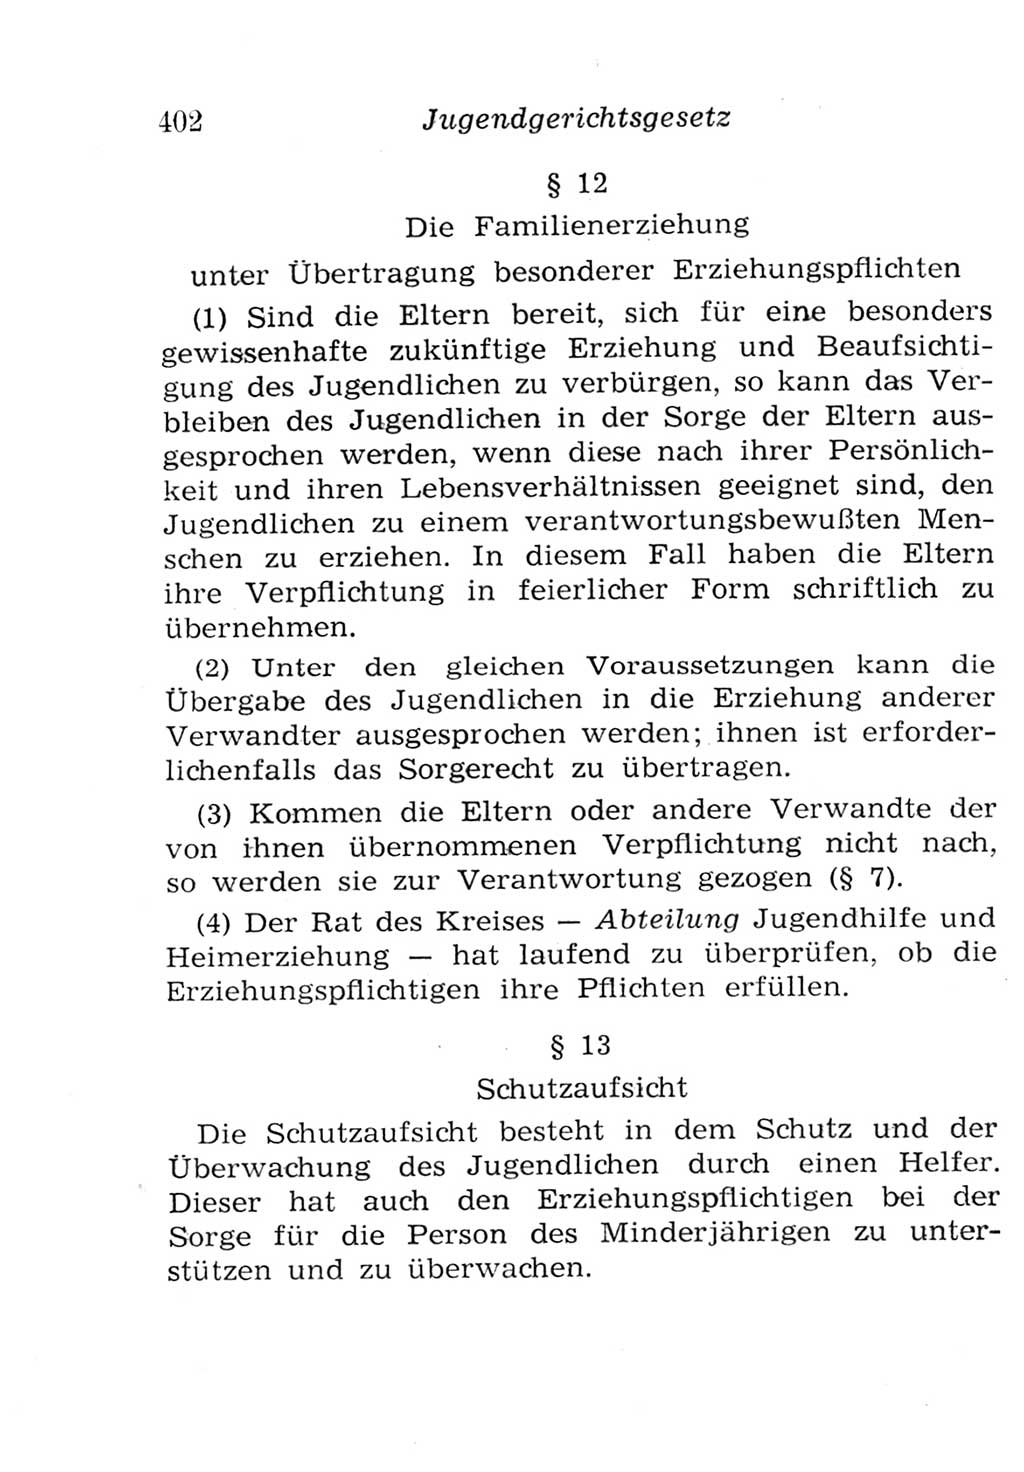 Strafgesetzbuch (StGB) und andere Strafgesetze [Deutsche Demokratische Republik (DDR)] 1957, Seite 402 (StGB Strafges. DDR 1957, S. 402)